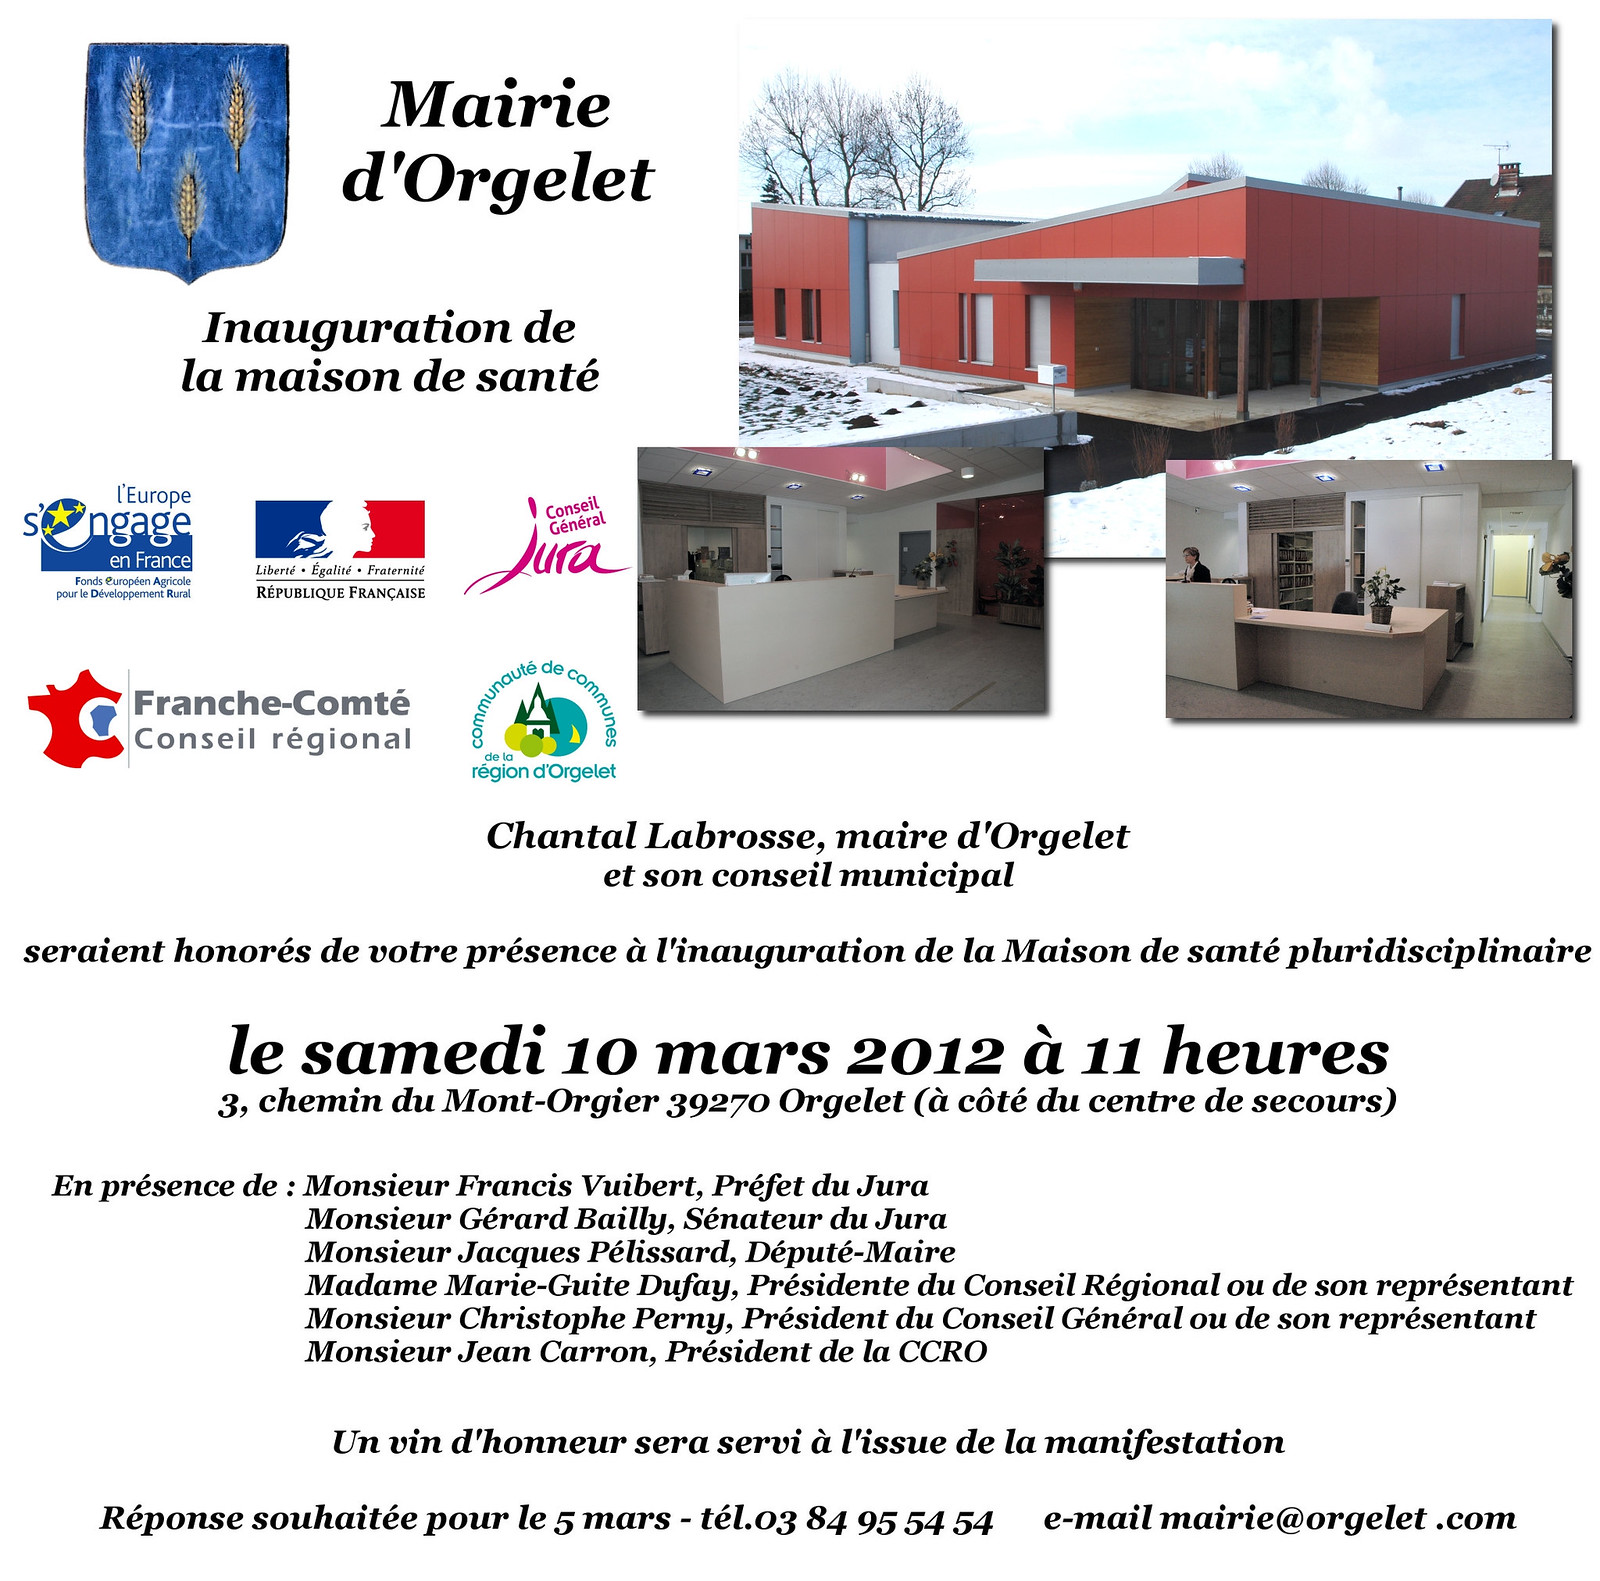 Carton d'invitation de l'inauguration de la maison de santé d'Orgelet en 2012